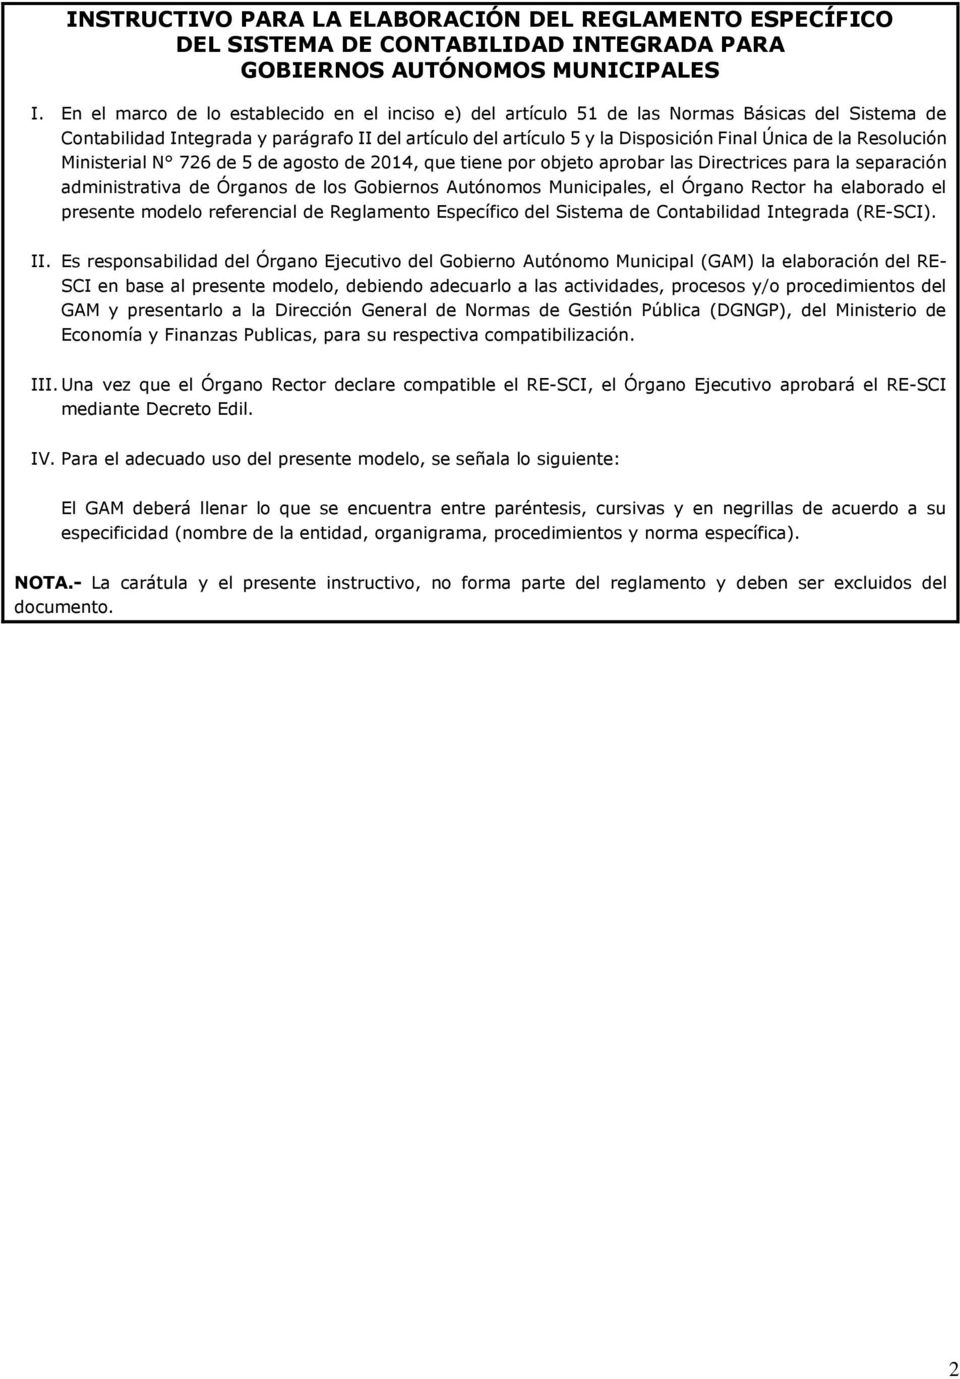 Resolución Ministerial N 726 de 5 de agosto de 2014, que tiene por objeto aprobar las Directrices para la separación administrativa de Órganos de los Gobiernos Autónomos Municipales, el Órgano Rector